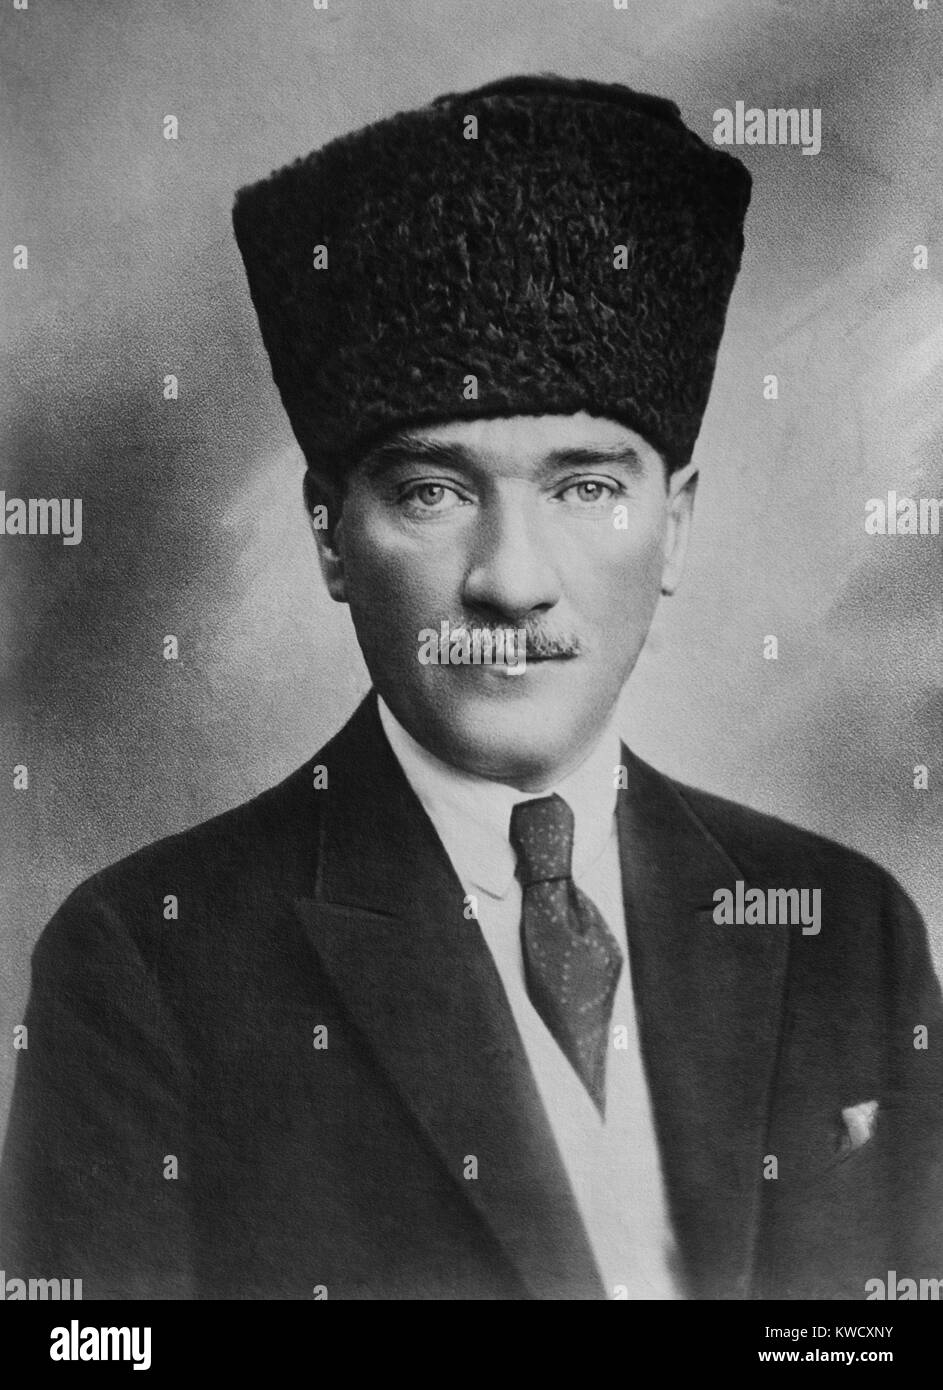 Mustafa Kemal Atatürk, Président de la Turquie, 1923-1938. Il était un partisan de la révolution des Jeunes Turcs en 1908, un général victorieux de la défense de Gallipoli en 1915, et a dirigé le mouvement national turc dans la guerre d'indépendance Turque, 1920-1922 (BSLOC 2017 1 114) Banque D'Images